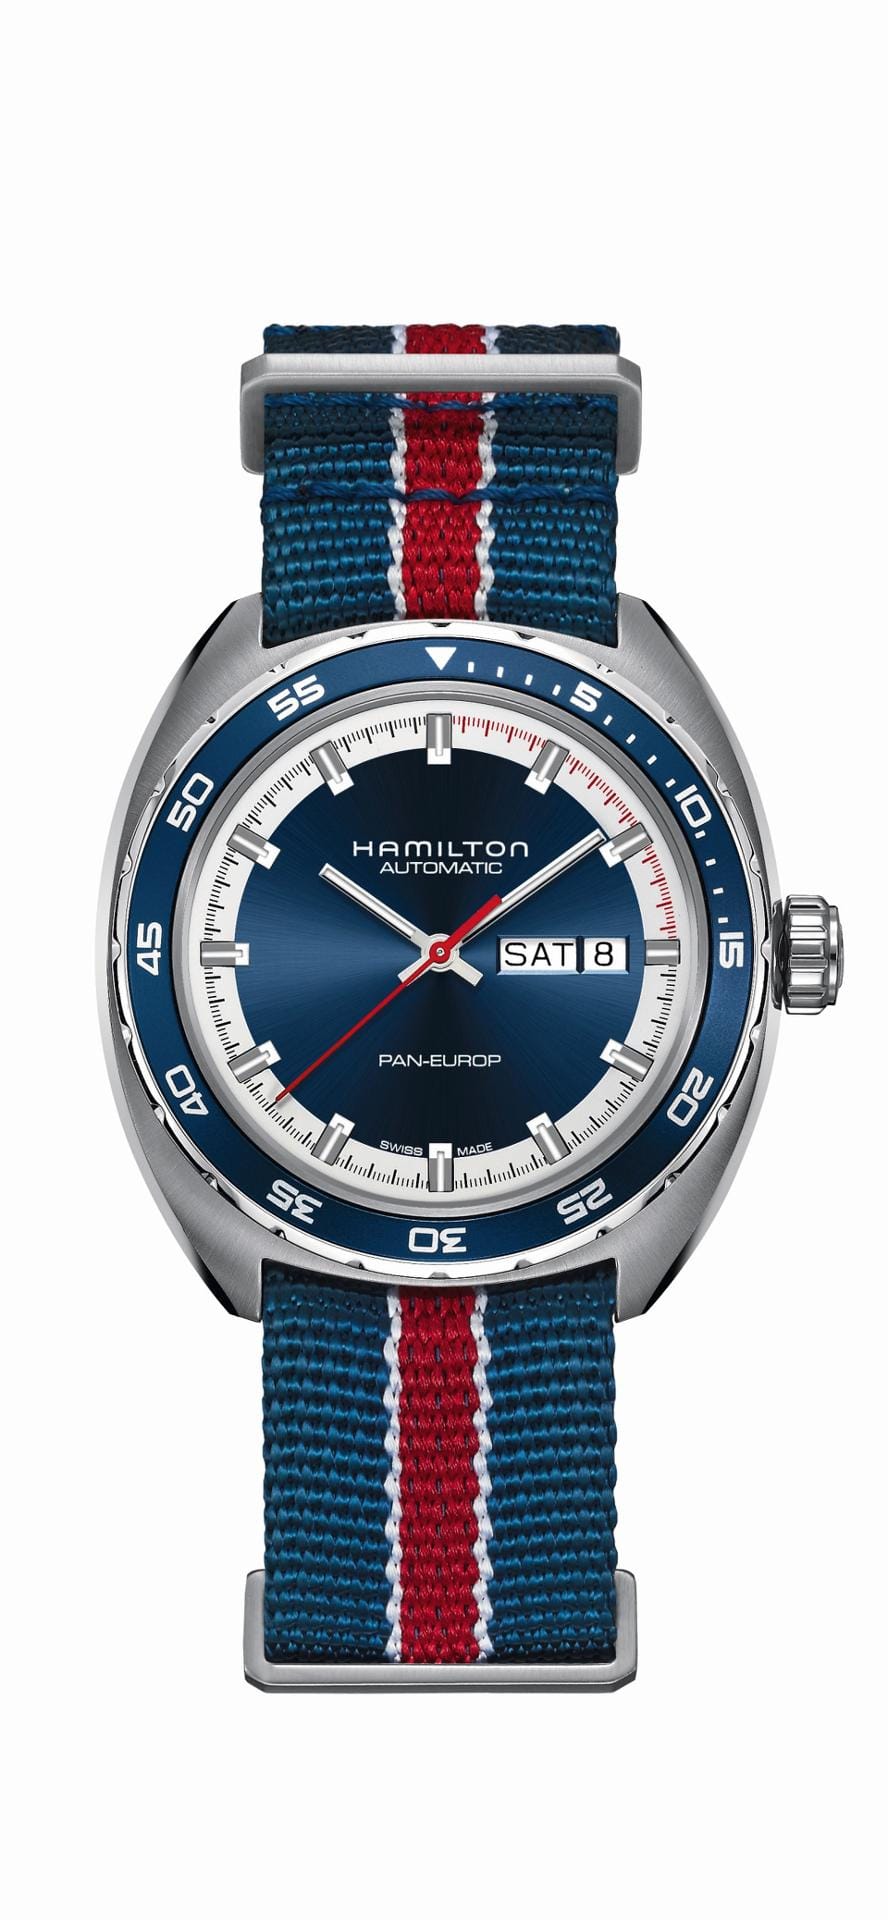 Ein schickes Modell für unter 1000 Euro ist die Hamilton Pan Europ mit schickem Nato-Armband.